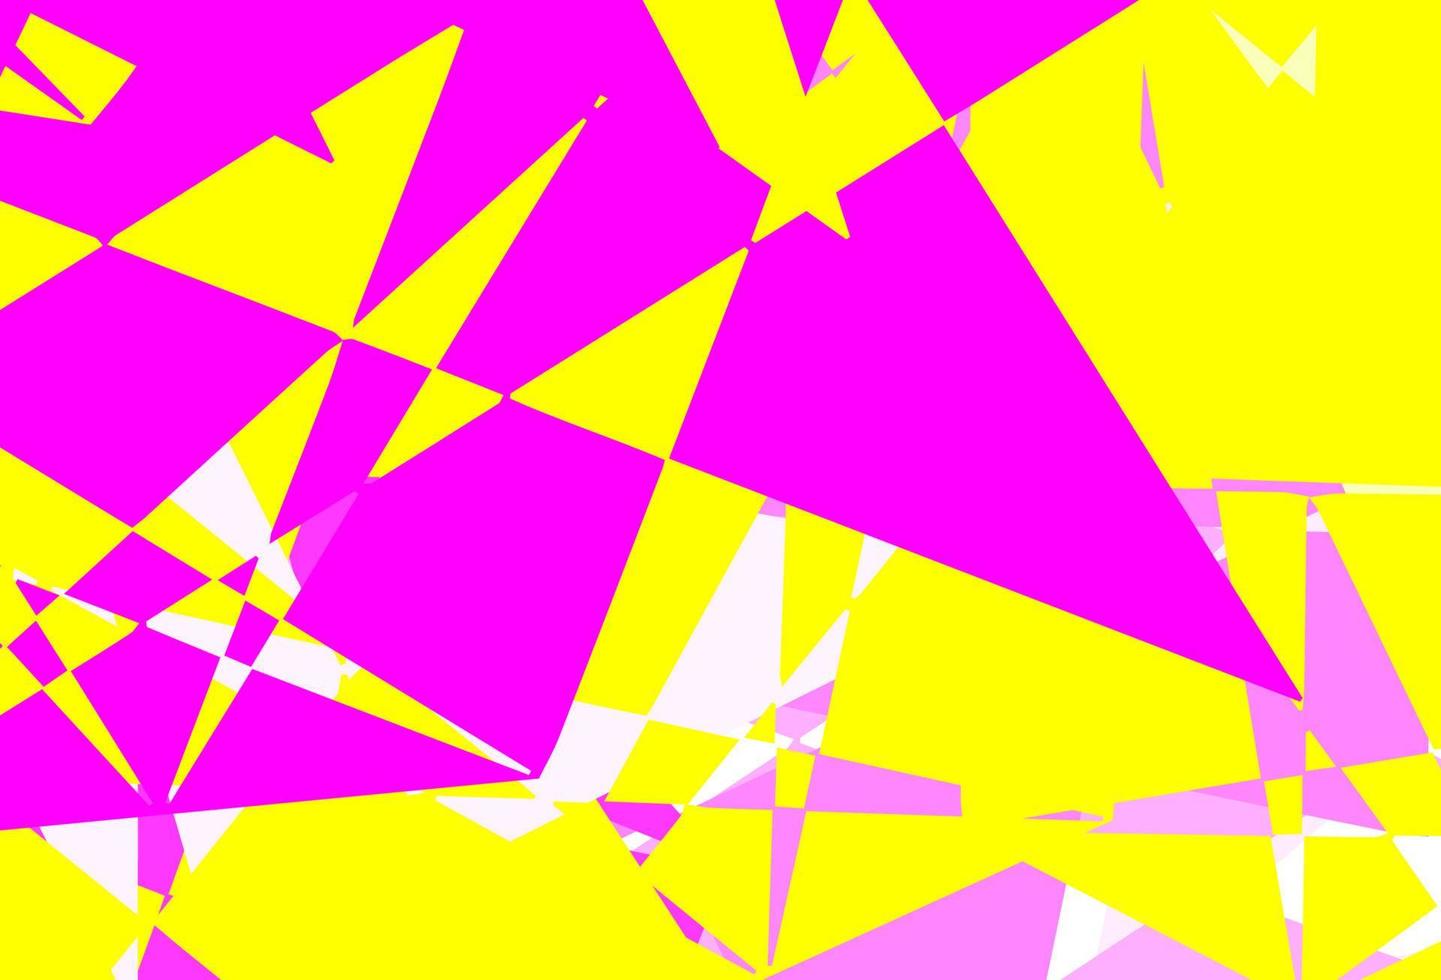 modello vettoriale rosa chiaro, giallo con forme poligonali.